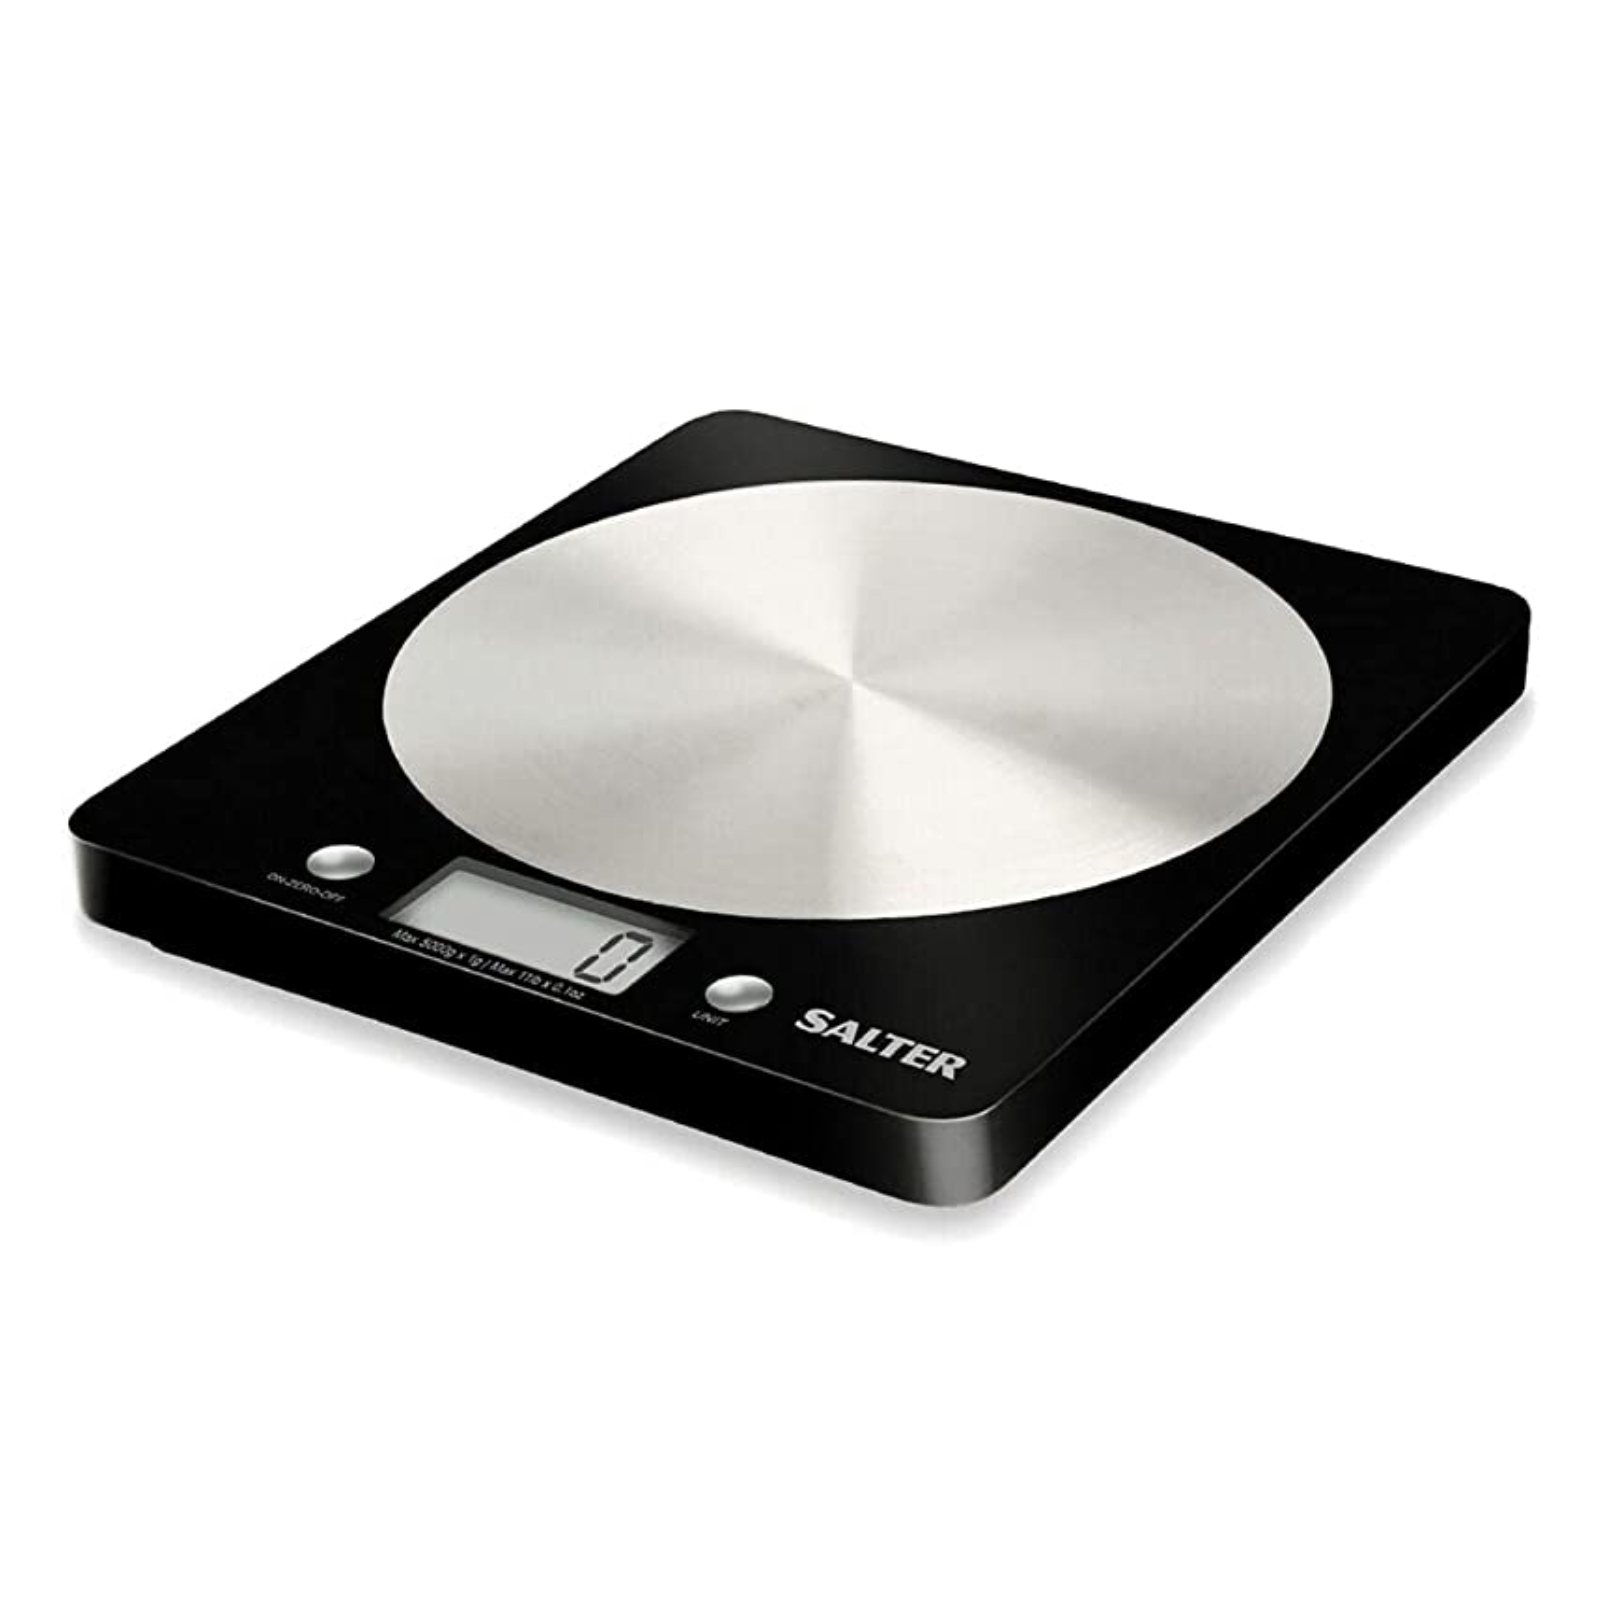 Salter 1036 Digital Kitchen Weighing Scales